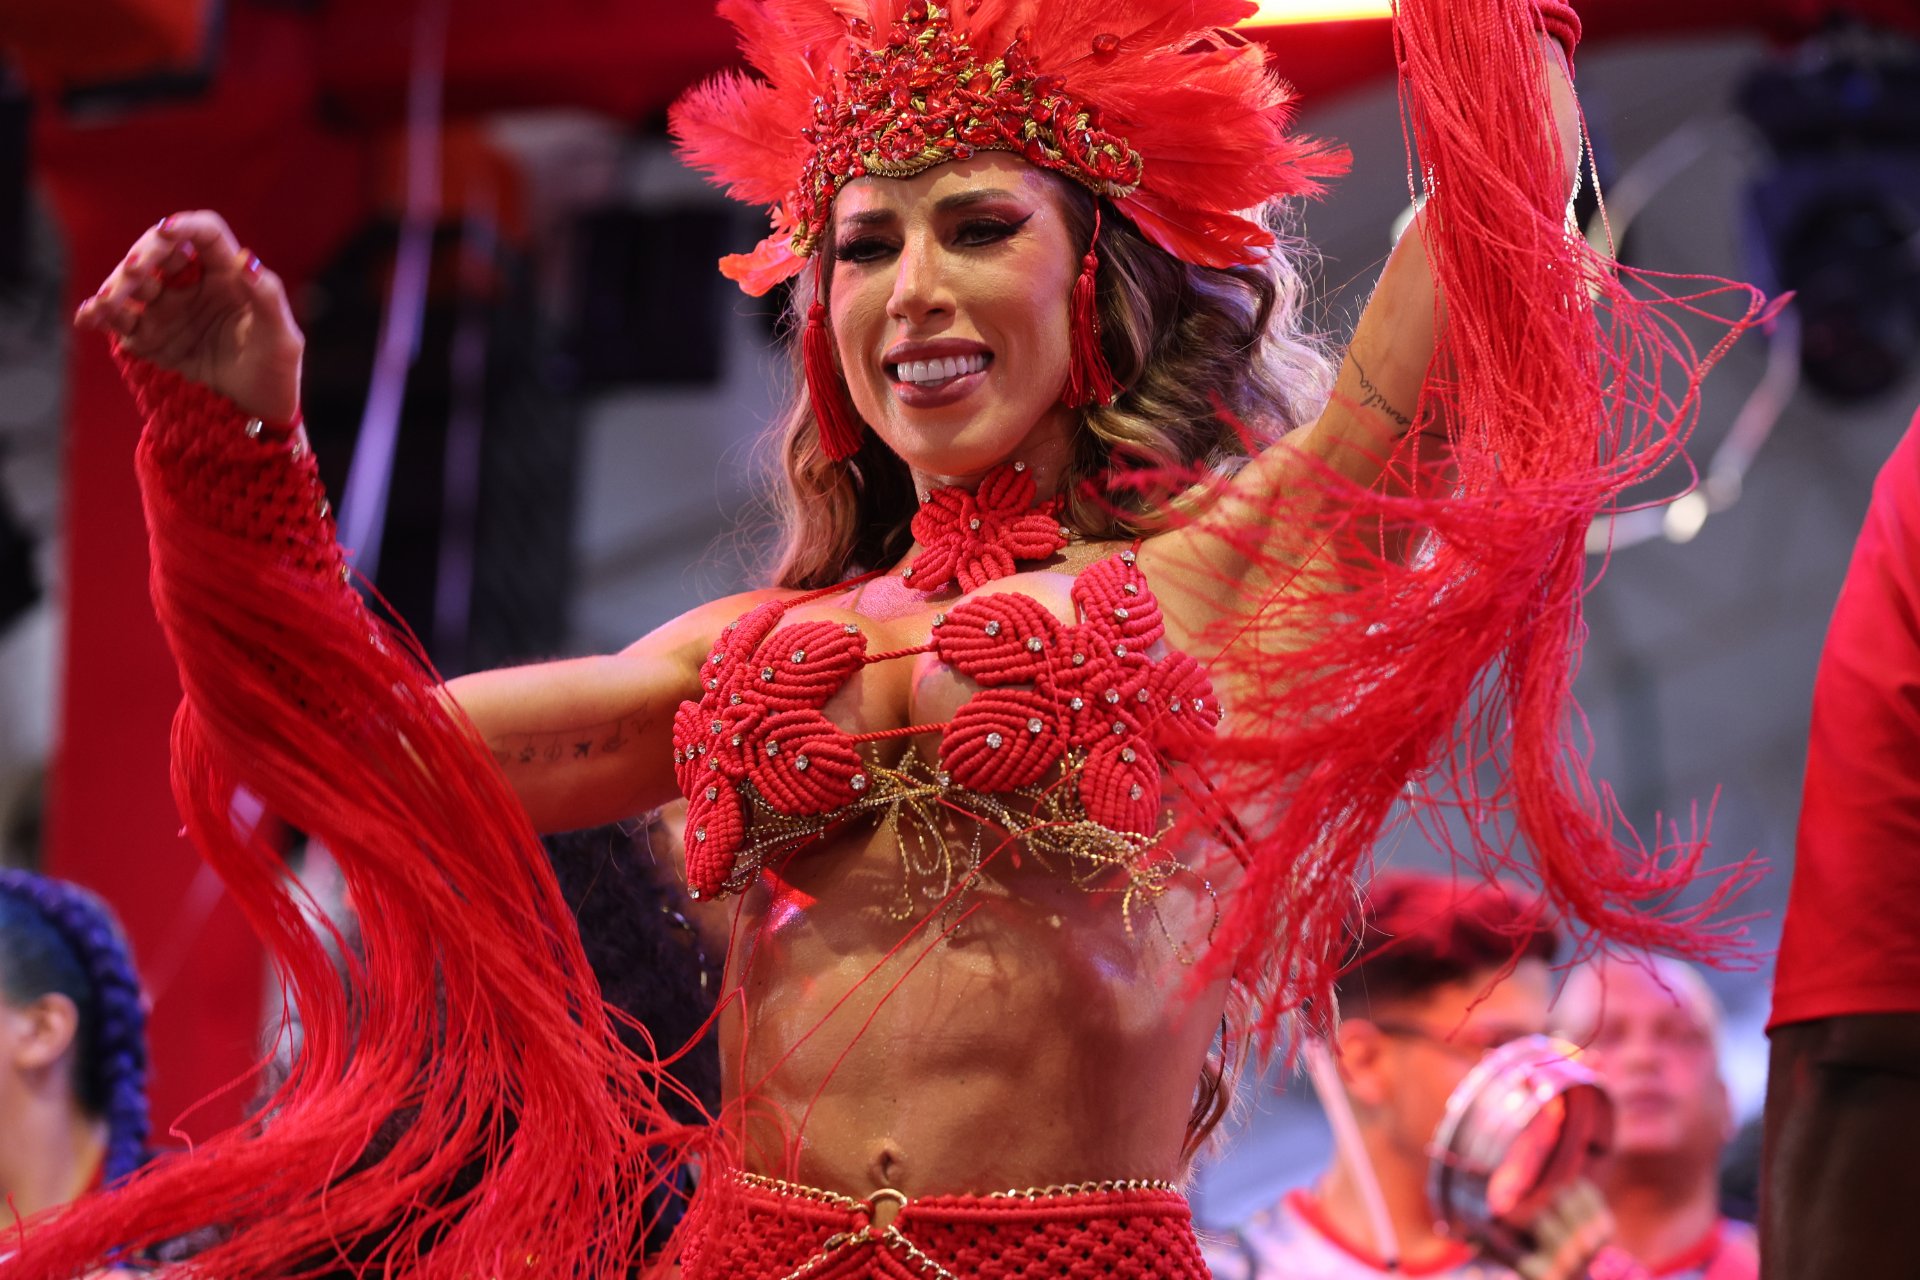 Tati Minerato Encanta como Rainha de Bateria no Festival “Guardiões da Favela”